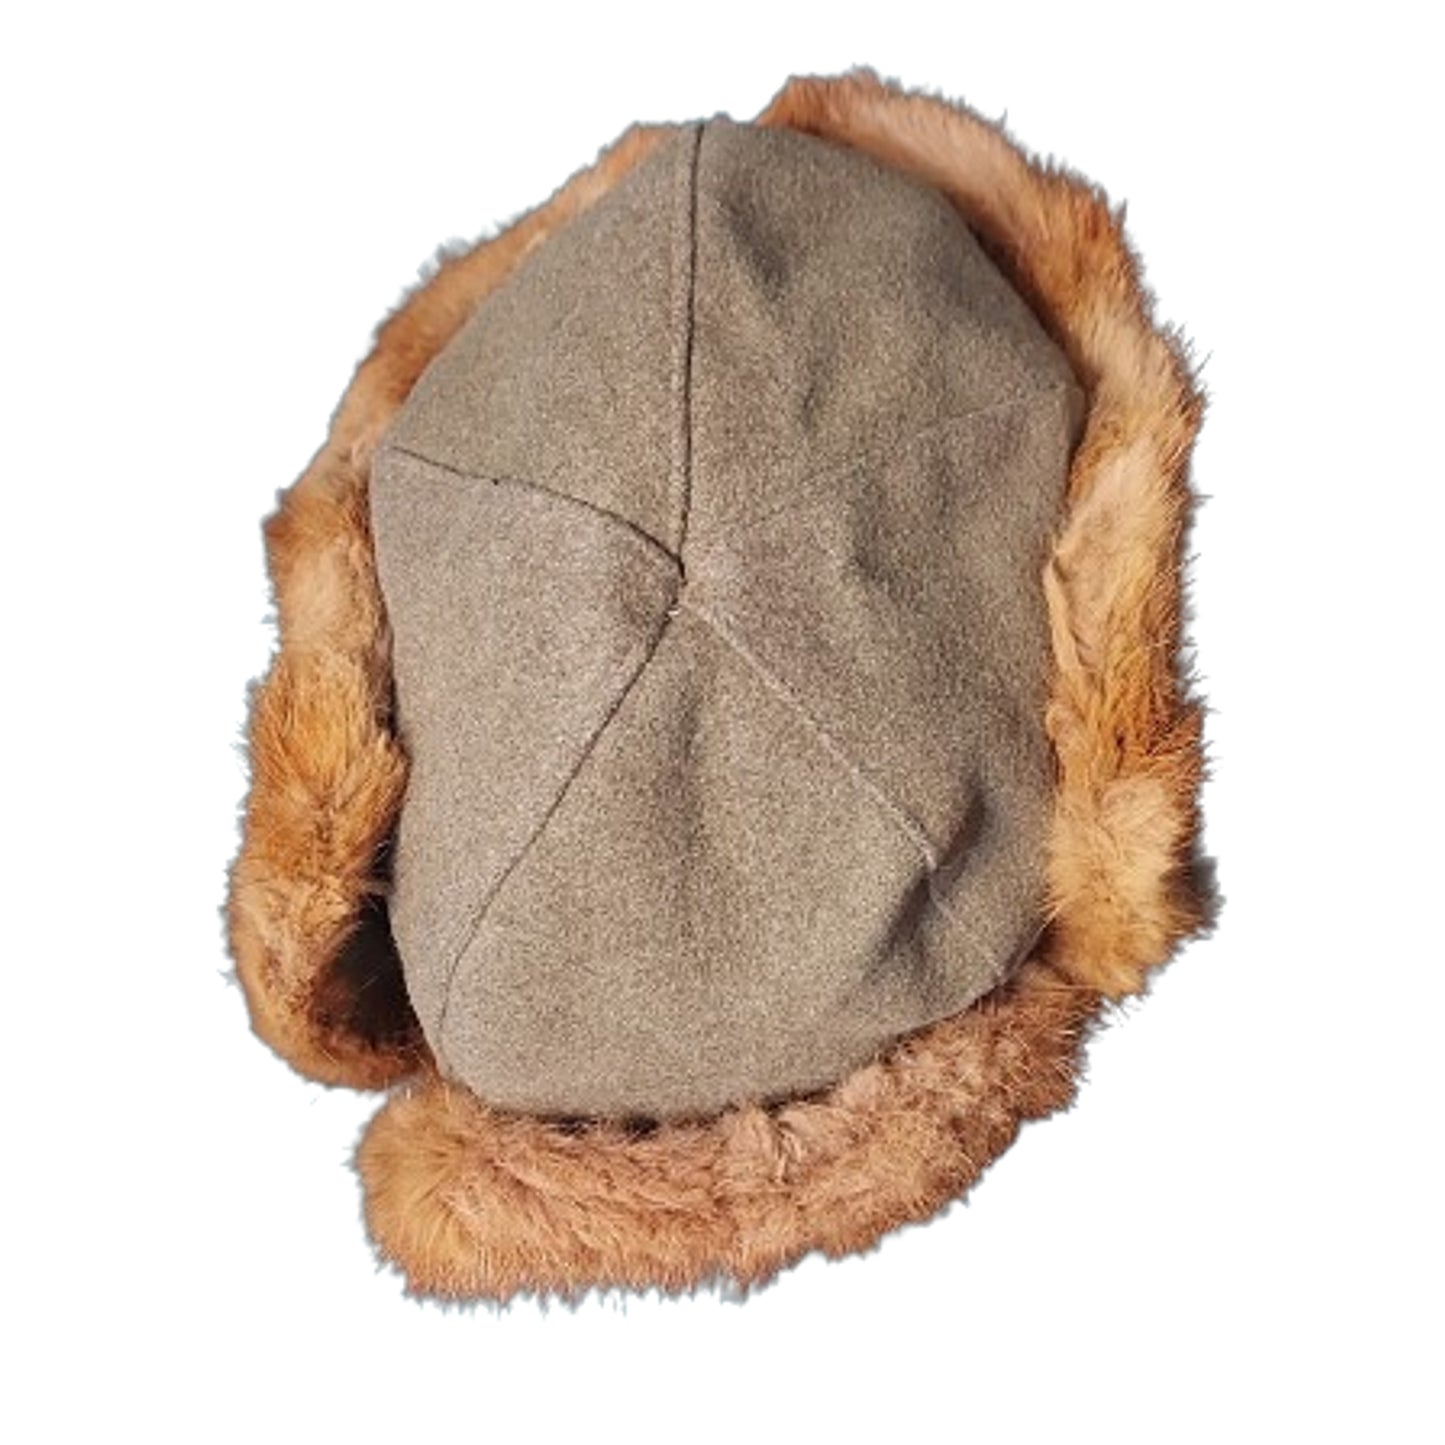 WW2 Canadian Army Winter Brill Fur Cap